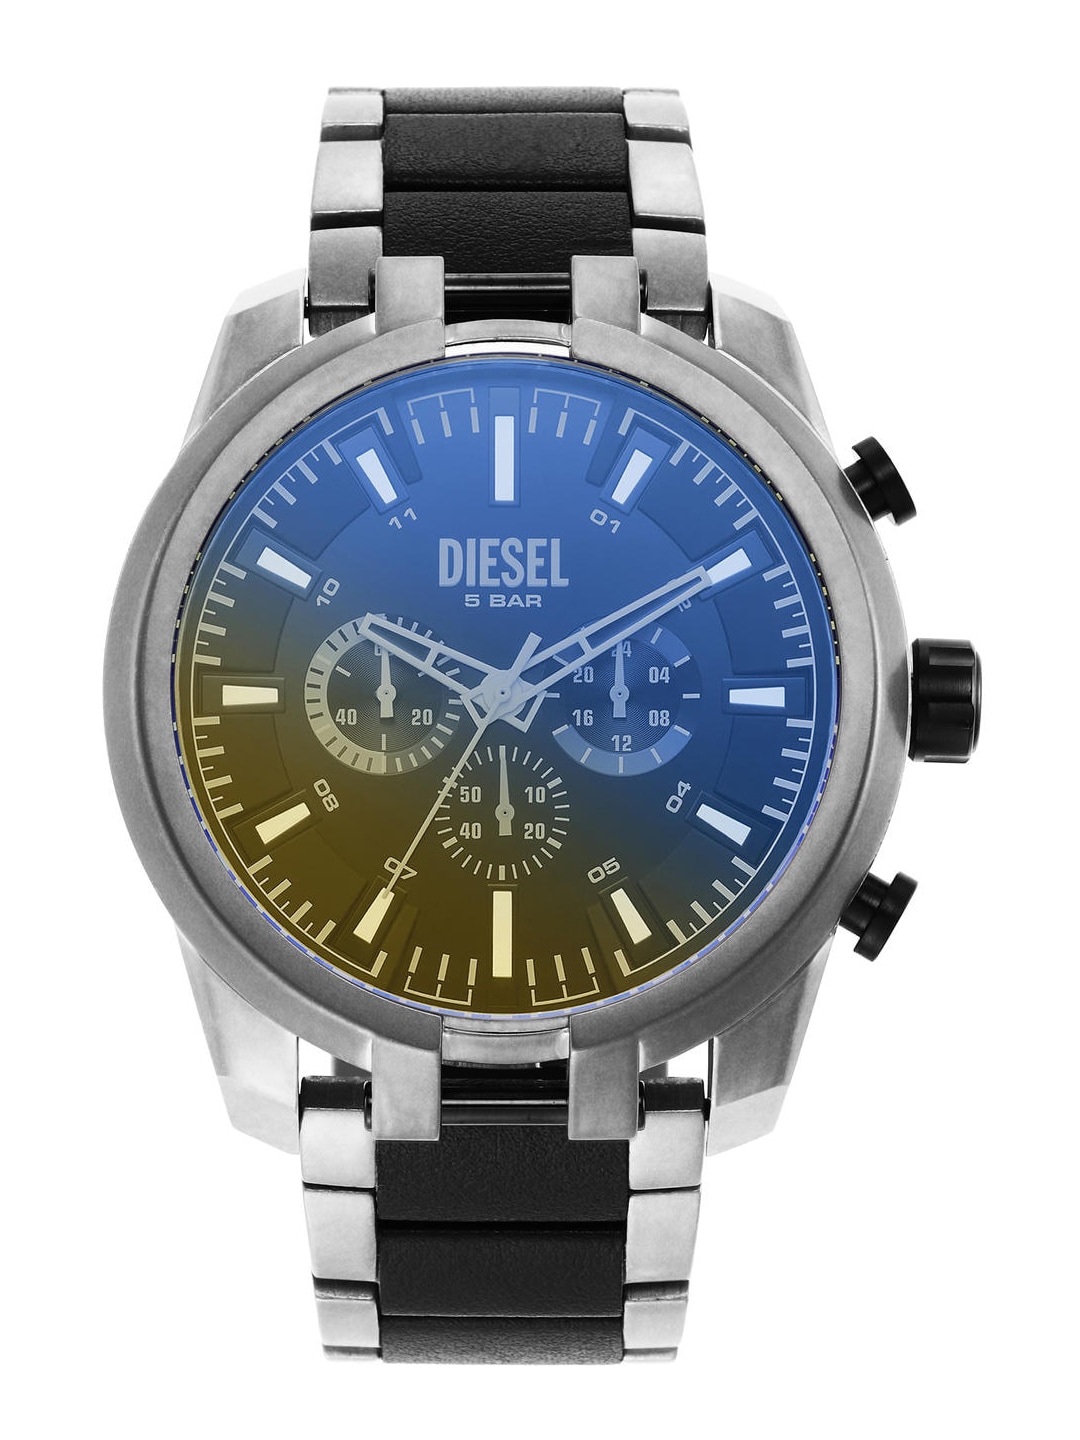 Buy Diesel Watches In India Online